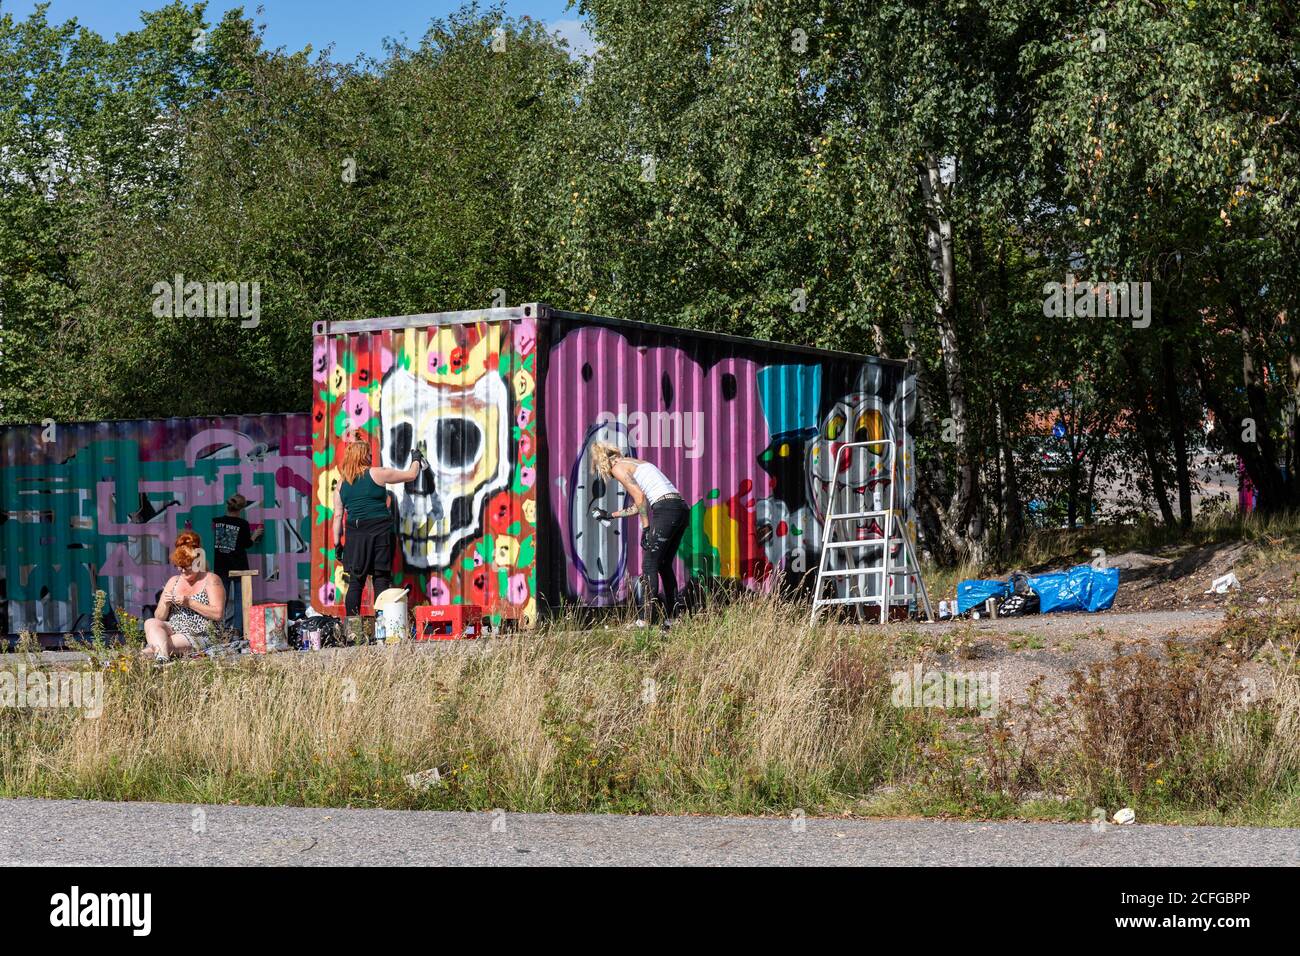 Mimmit peinttaa. Female graffiti artist event at Suvilahti wasteland in Helsinki, Finland. Stock Photo